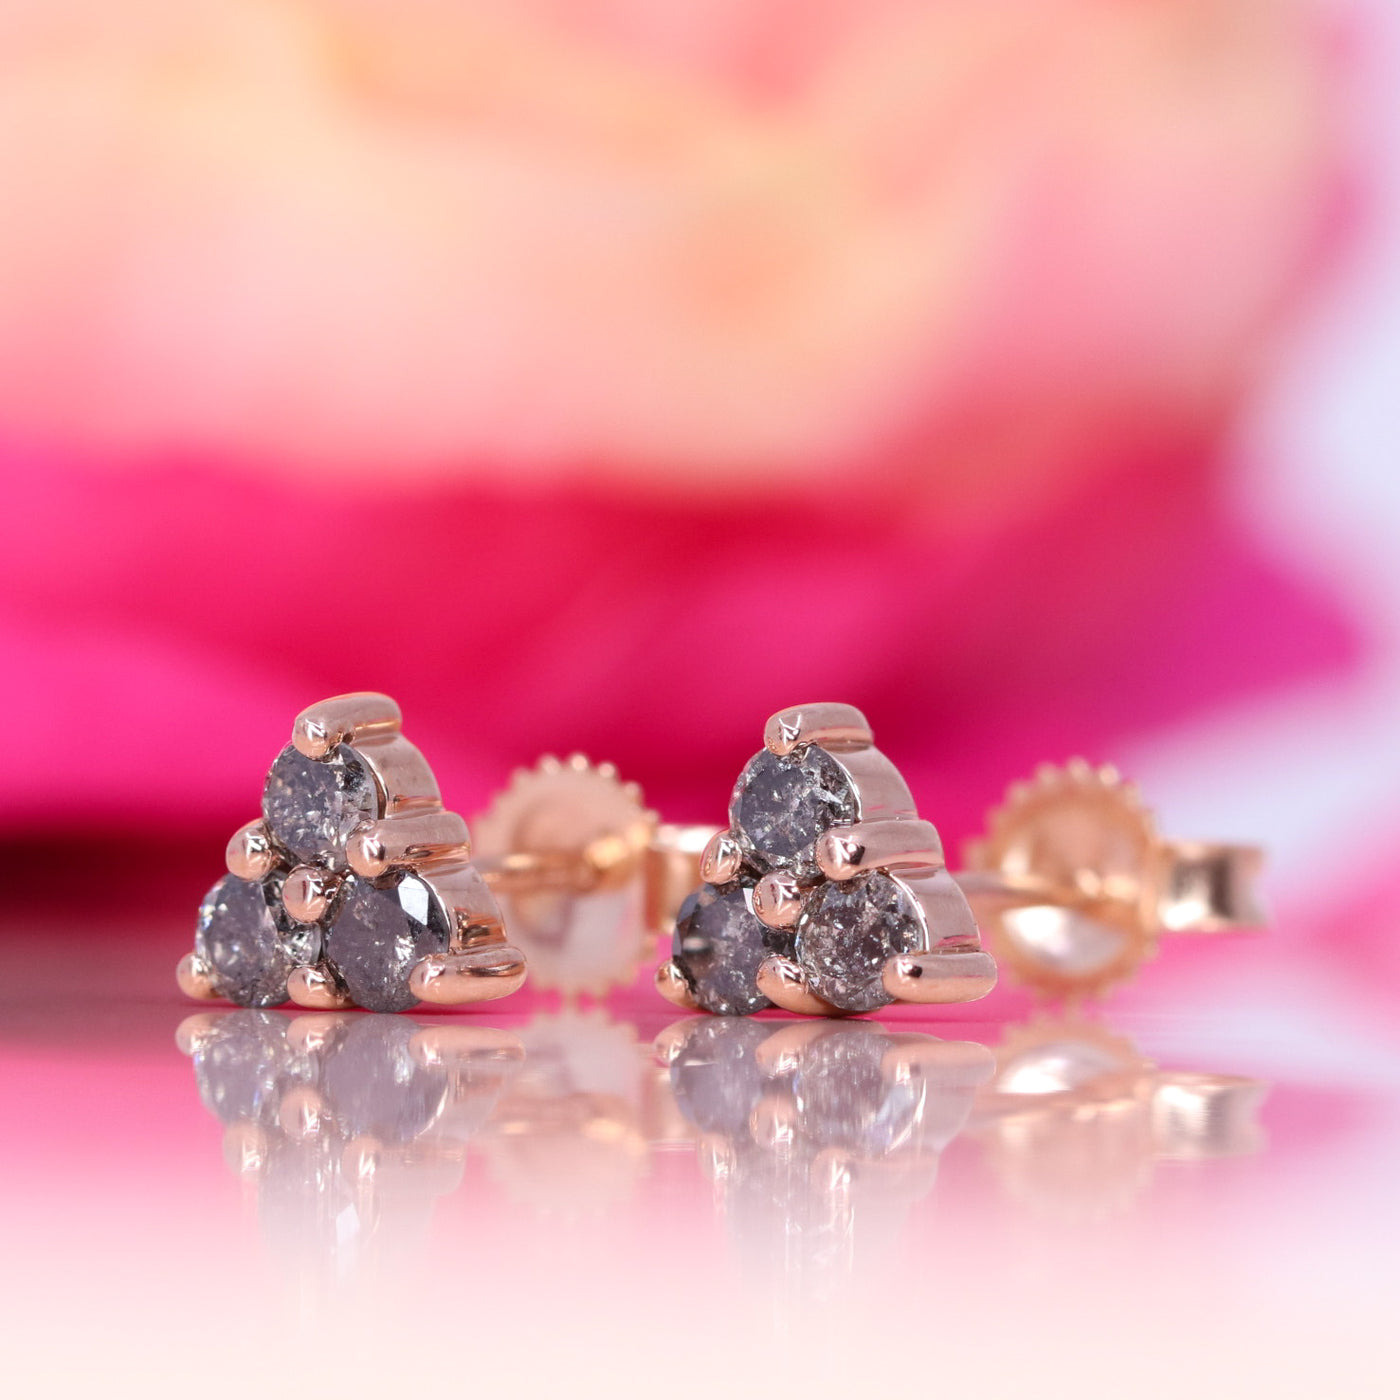 Henrietta - Salt and Pepper Diamond Set Earrings in Rose Gold - Ready-to-Wear